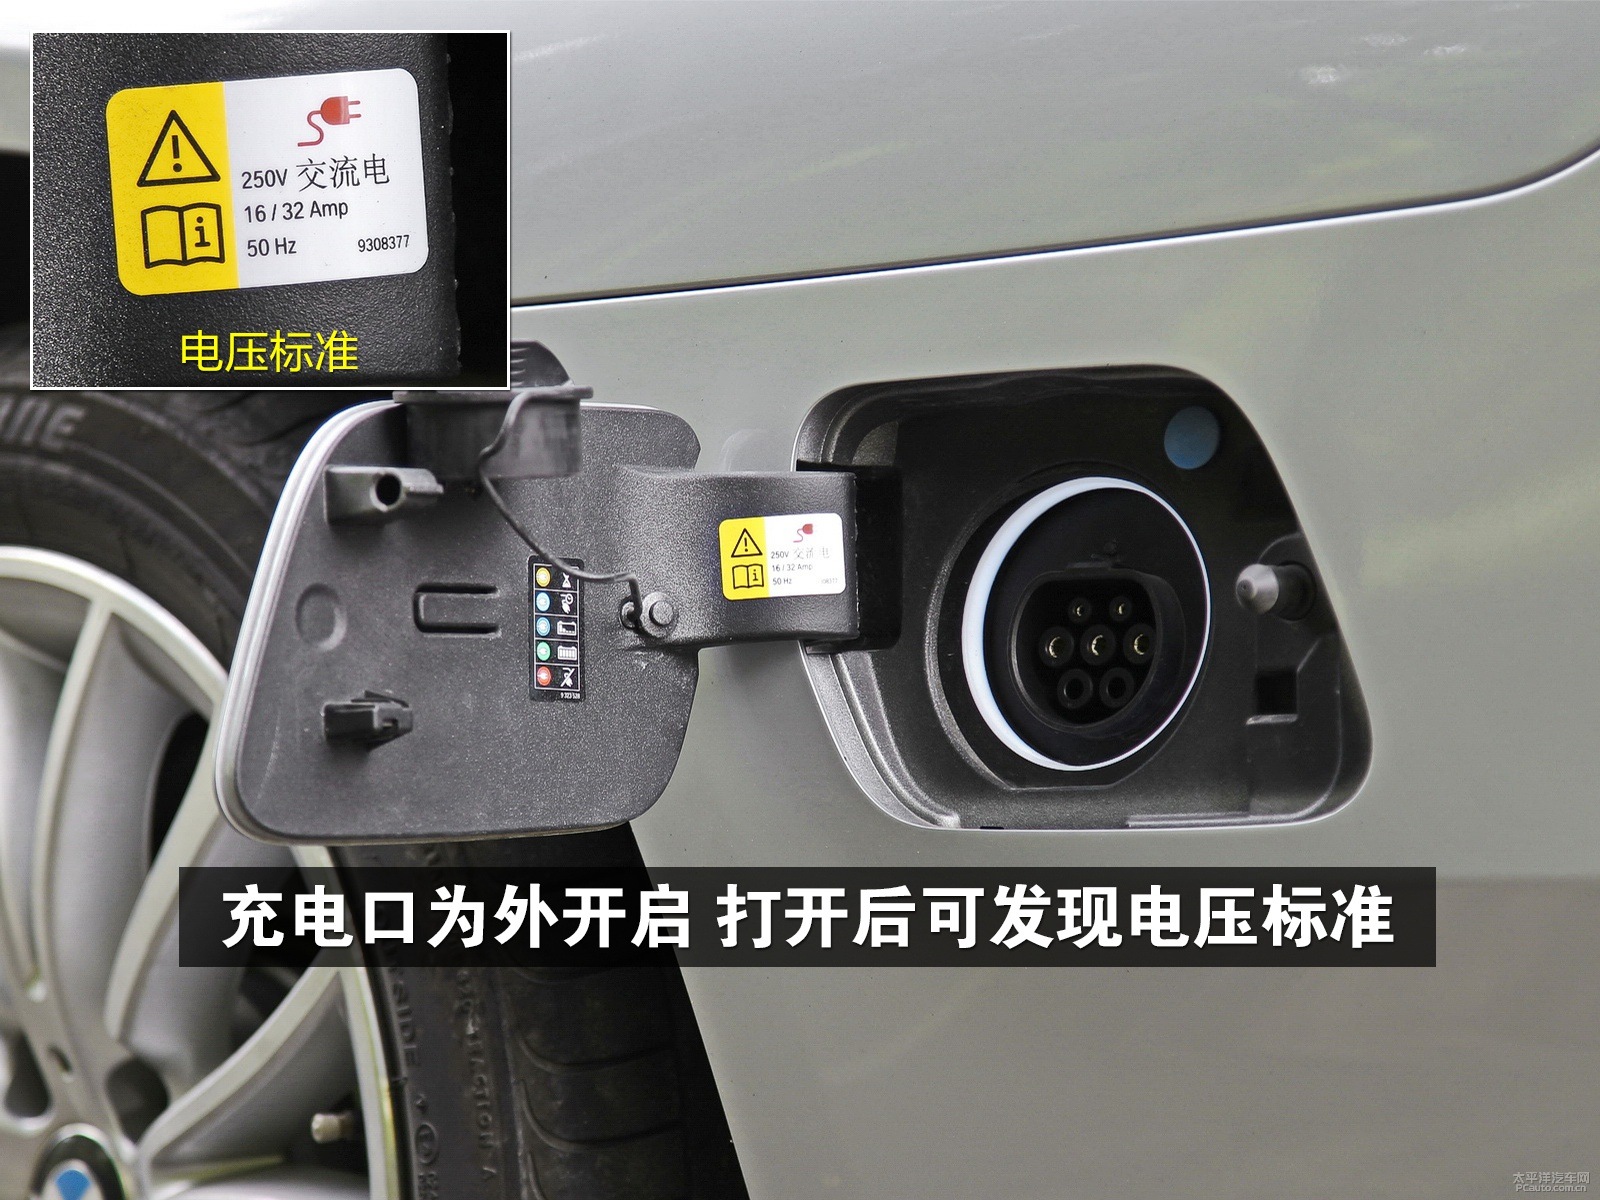 充电口位于车身左侧,上面标有可充电压标准,充电时请注意安全.